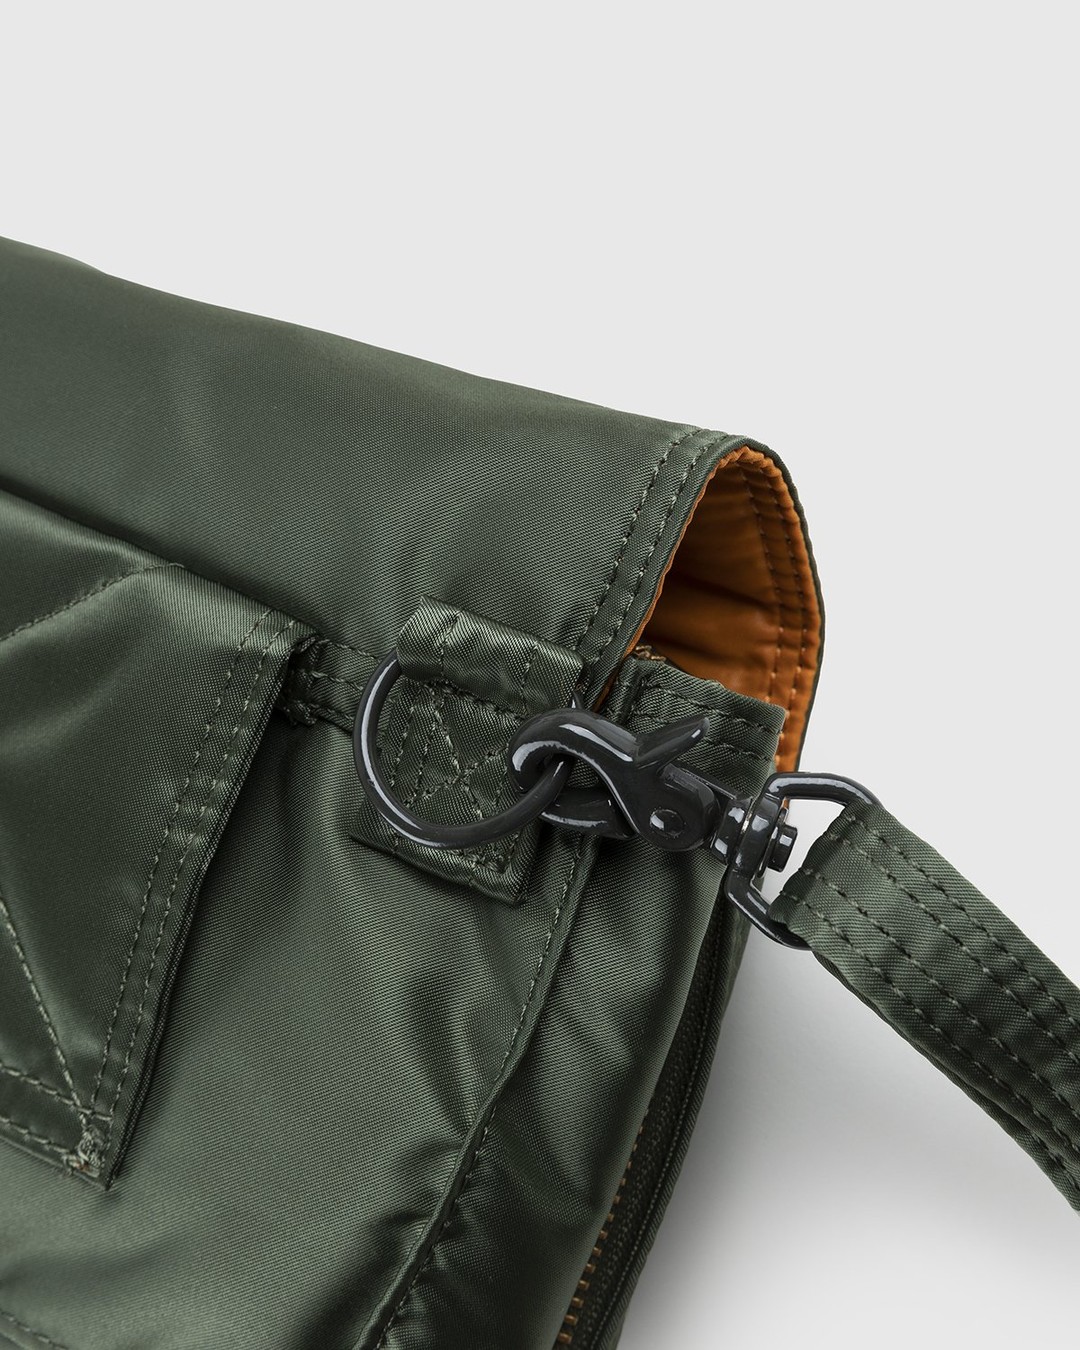 Porter-Yoshida & Co. – Tanker Clip Shoulder Bag Sage Green - Bags - Green - Image 3